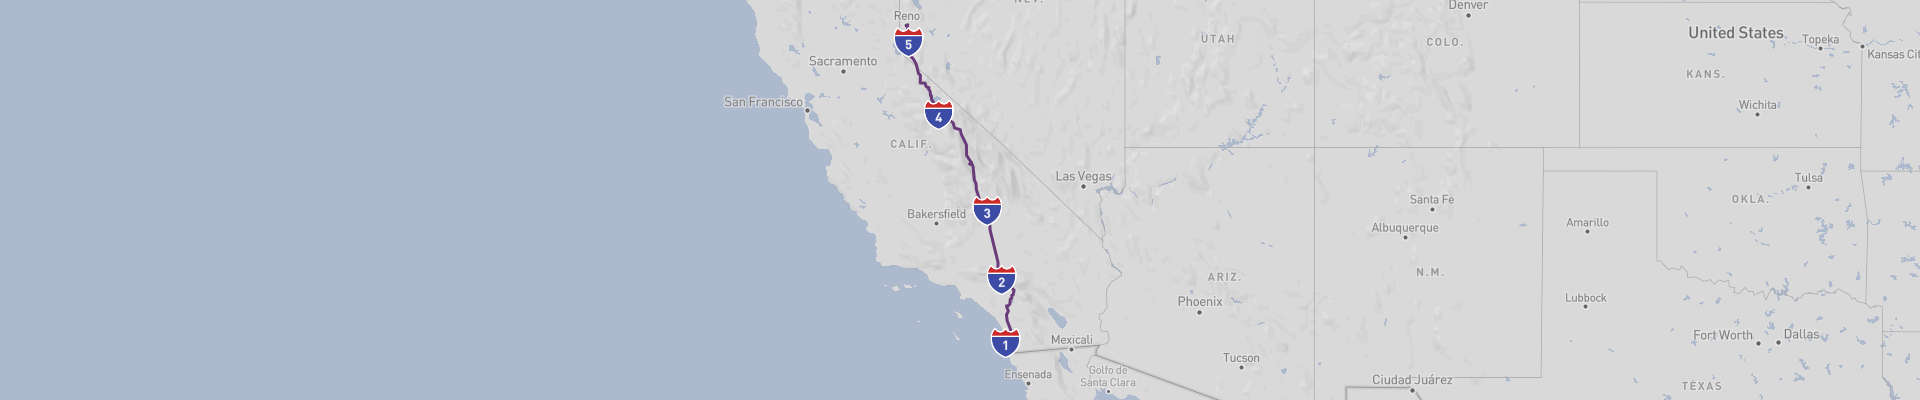 California US 395 Road Trip